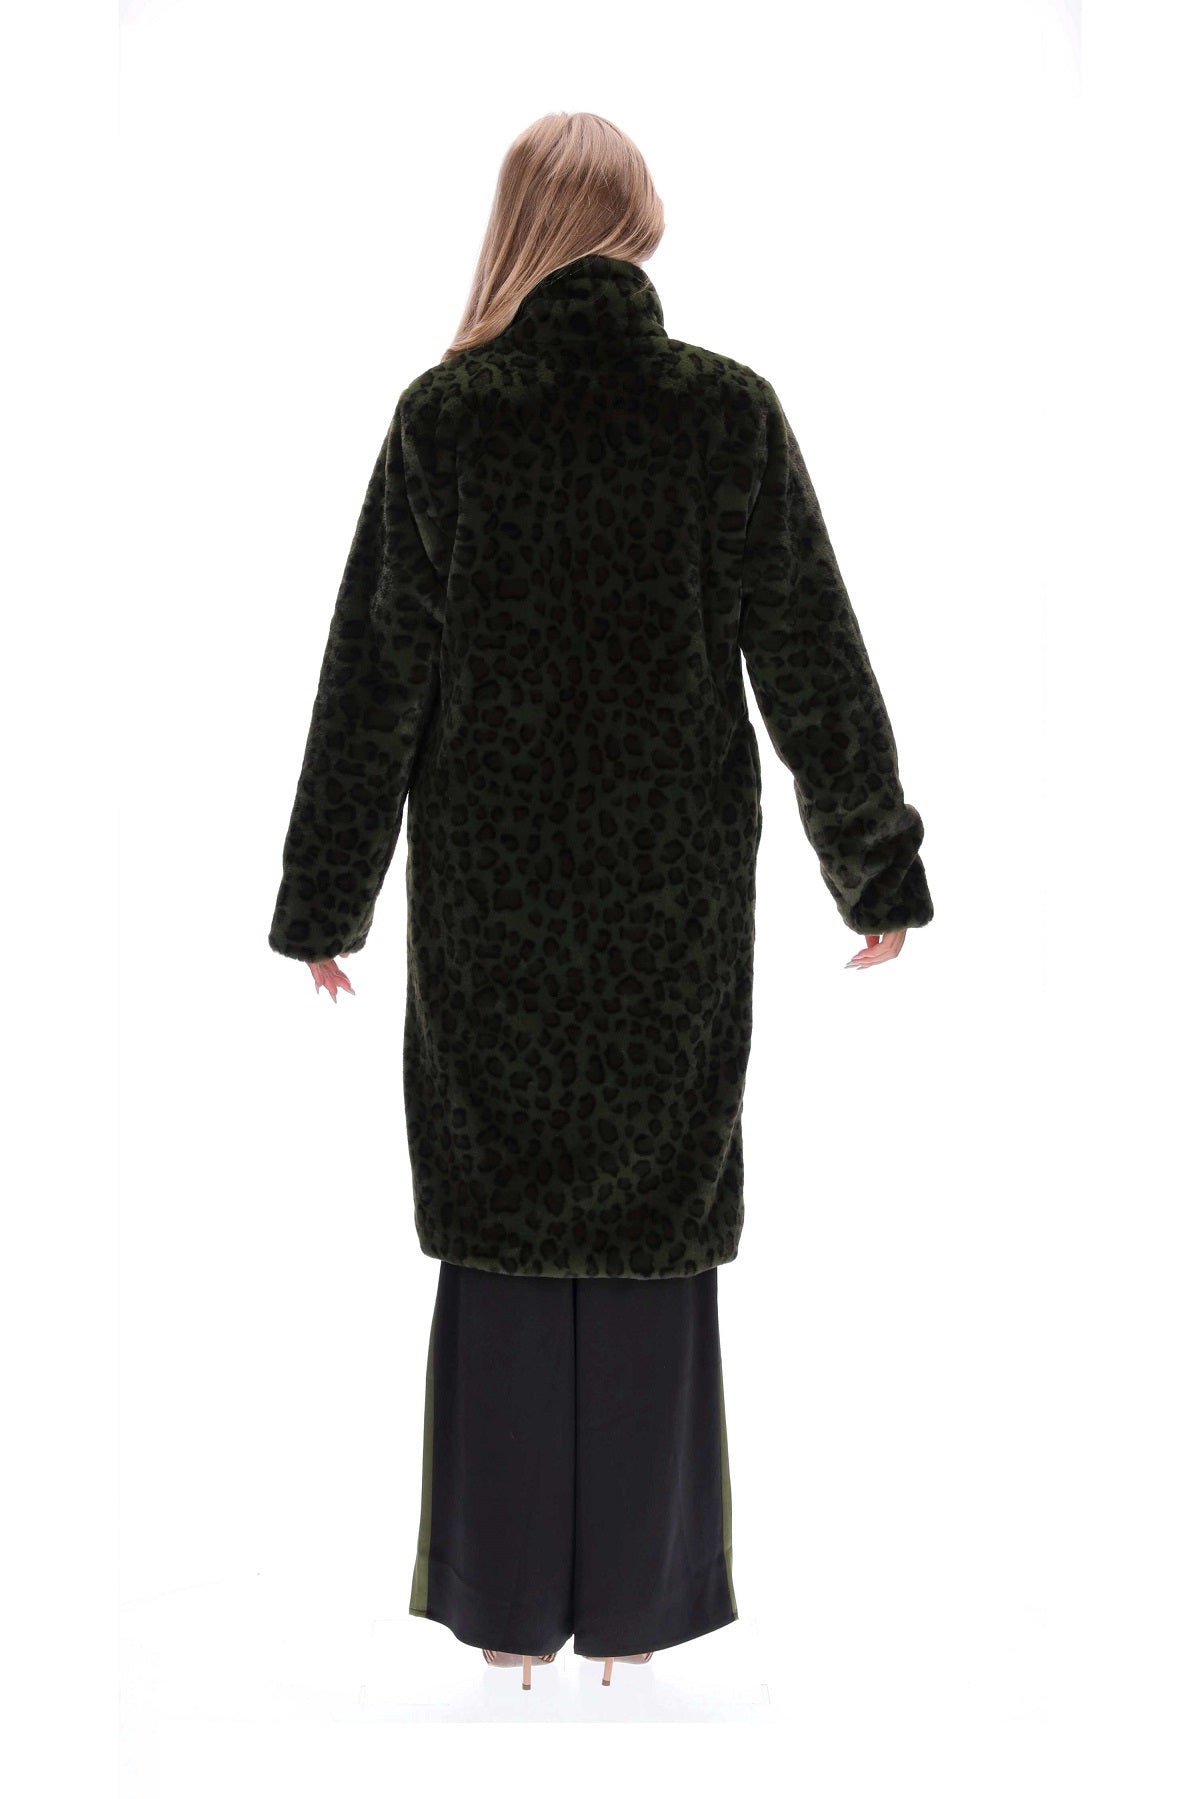 Amaya Hannah Green Fur Coat